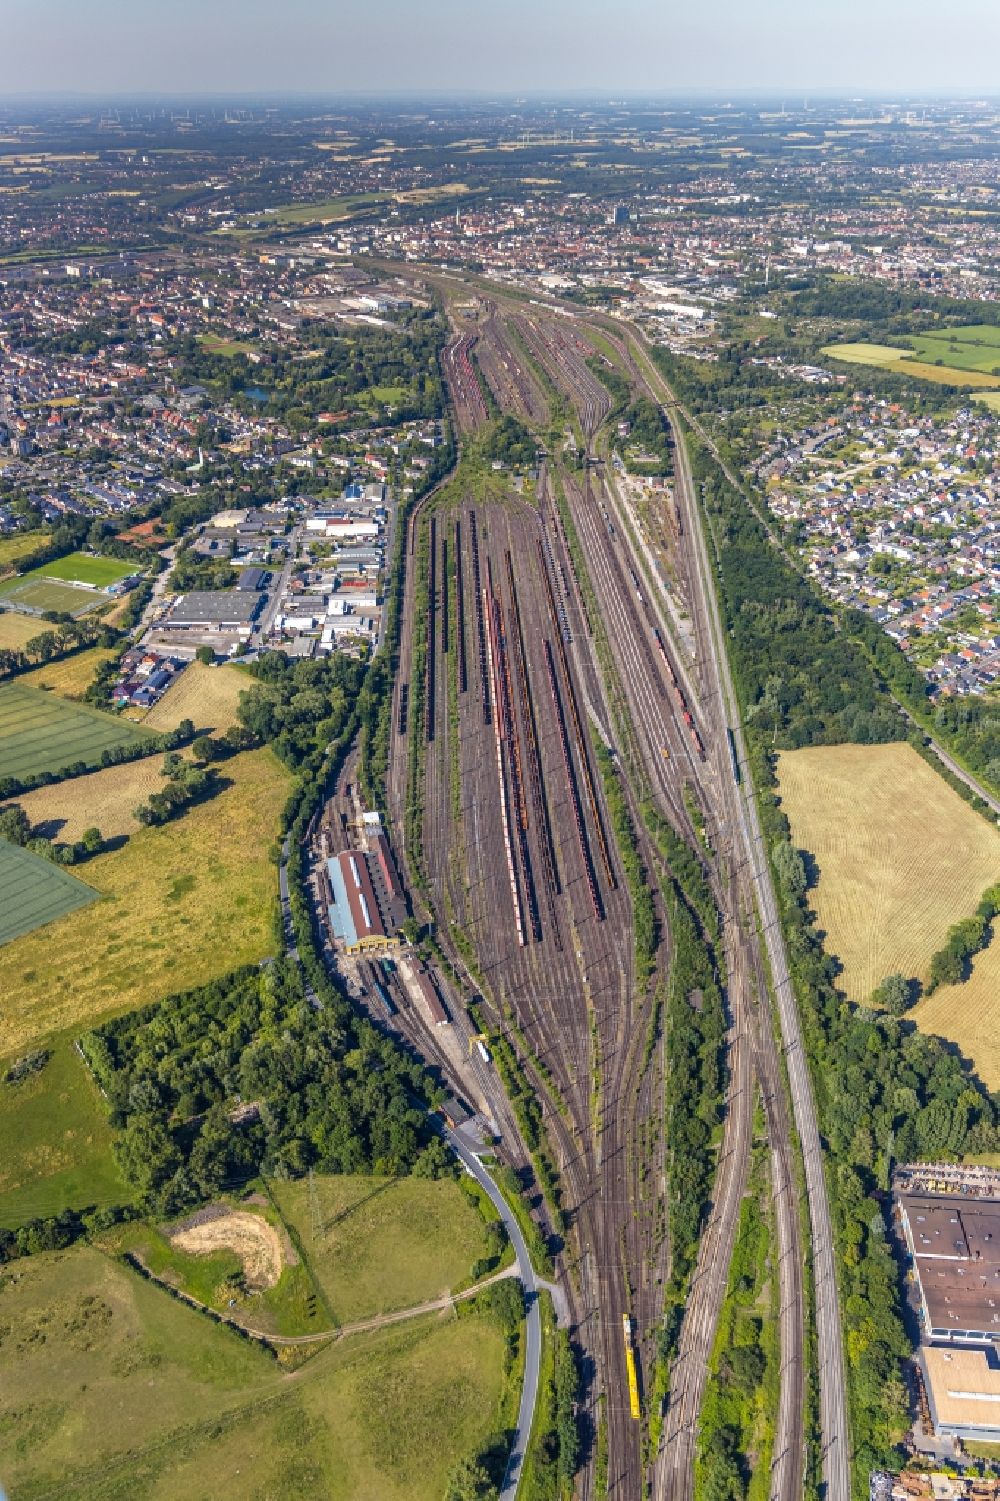 Luftbild Hamm - Rangierbahnhof und Güterbahnhof der Deutschen Bahn in Hamm im Bundesland Nordrhein-Westfalen, Deutschland